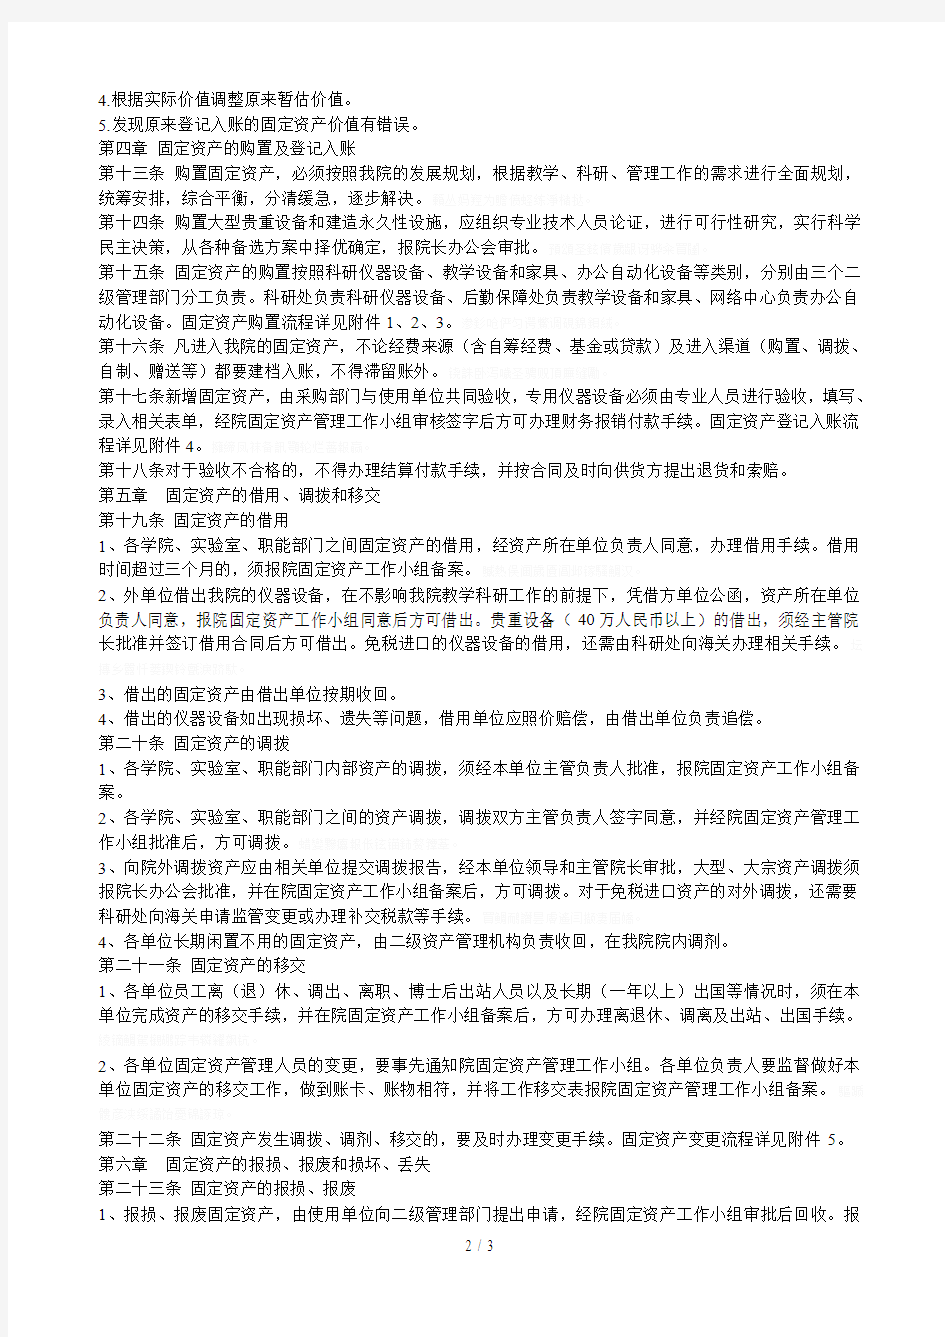 北京大学深圳研究生院固定资产管理办法(试行)